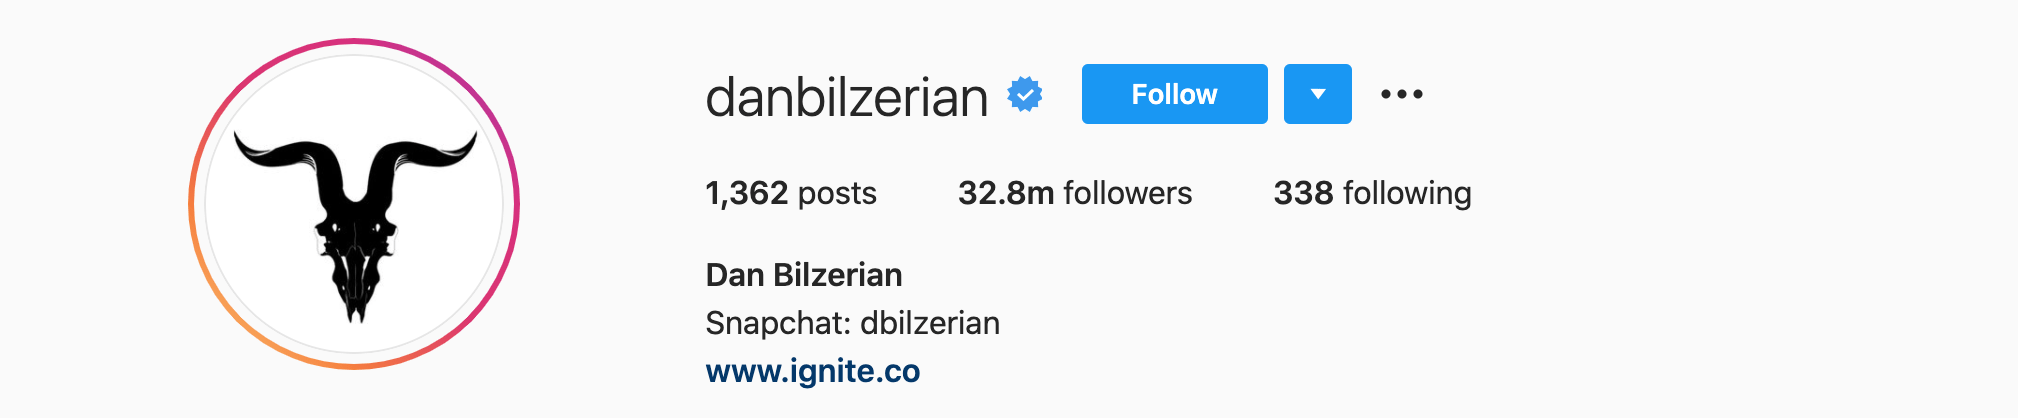 Top Instagram Influencers - DAN BILZERIAN